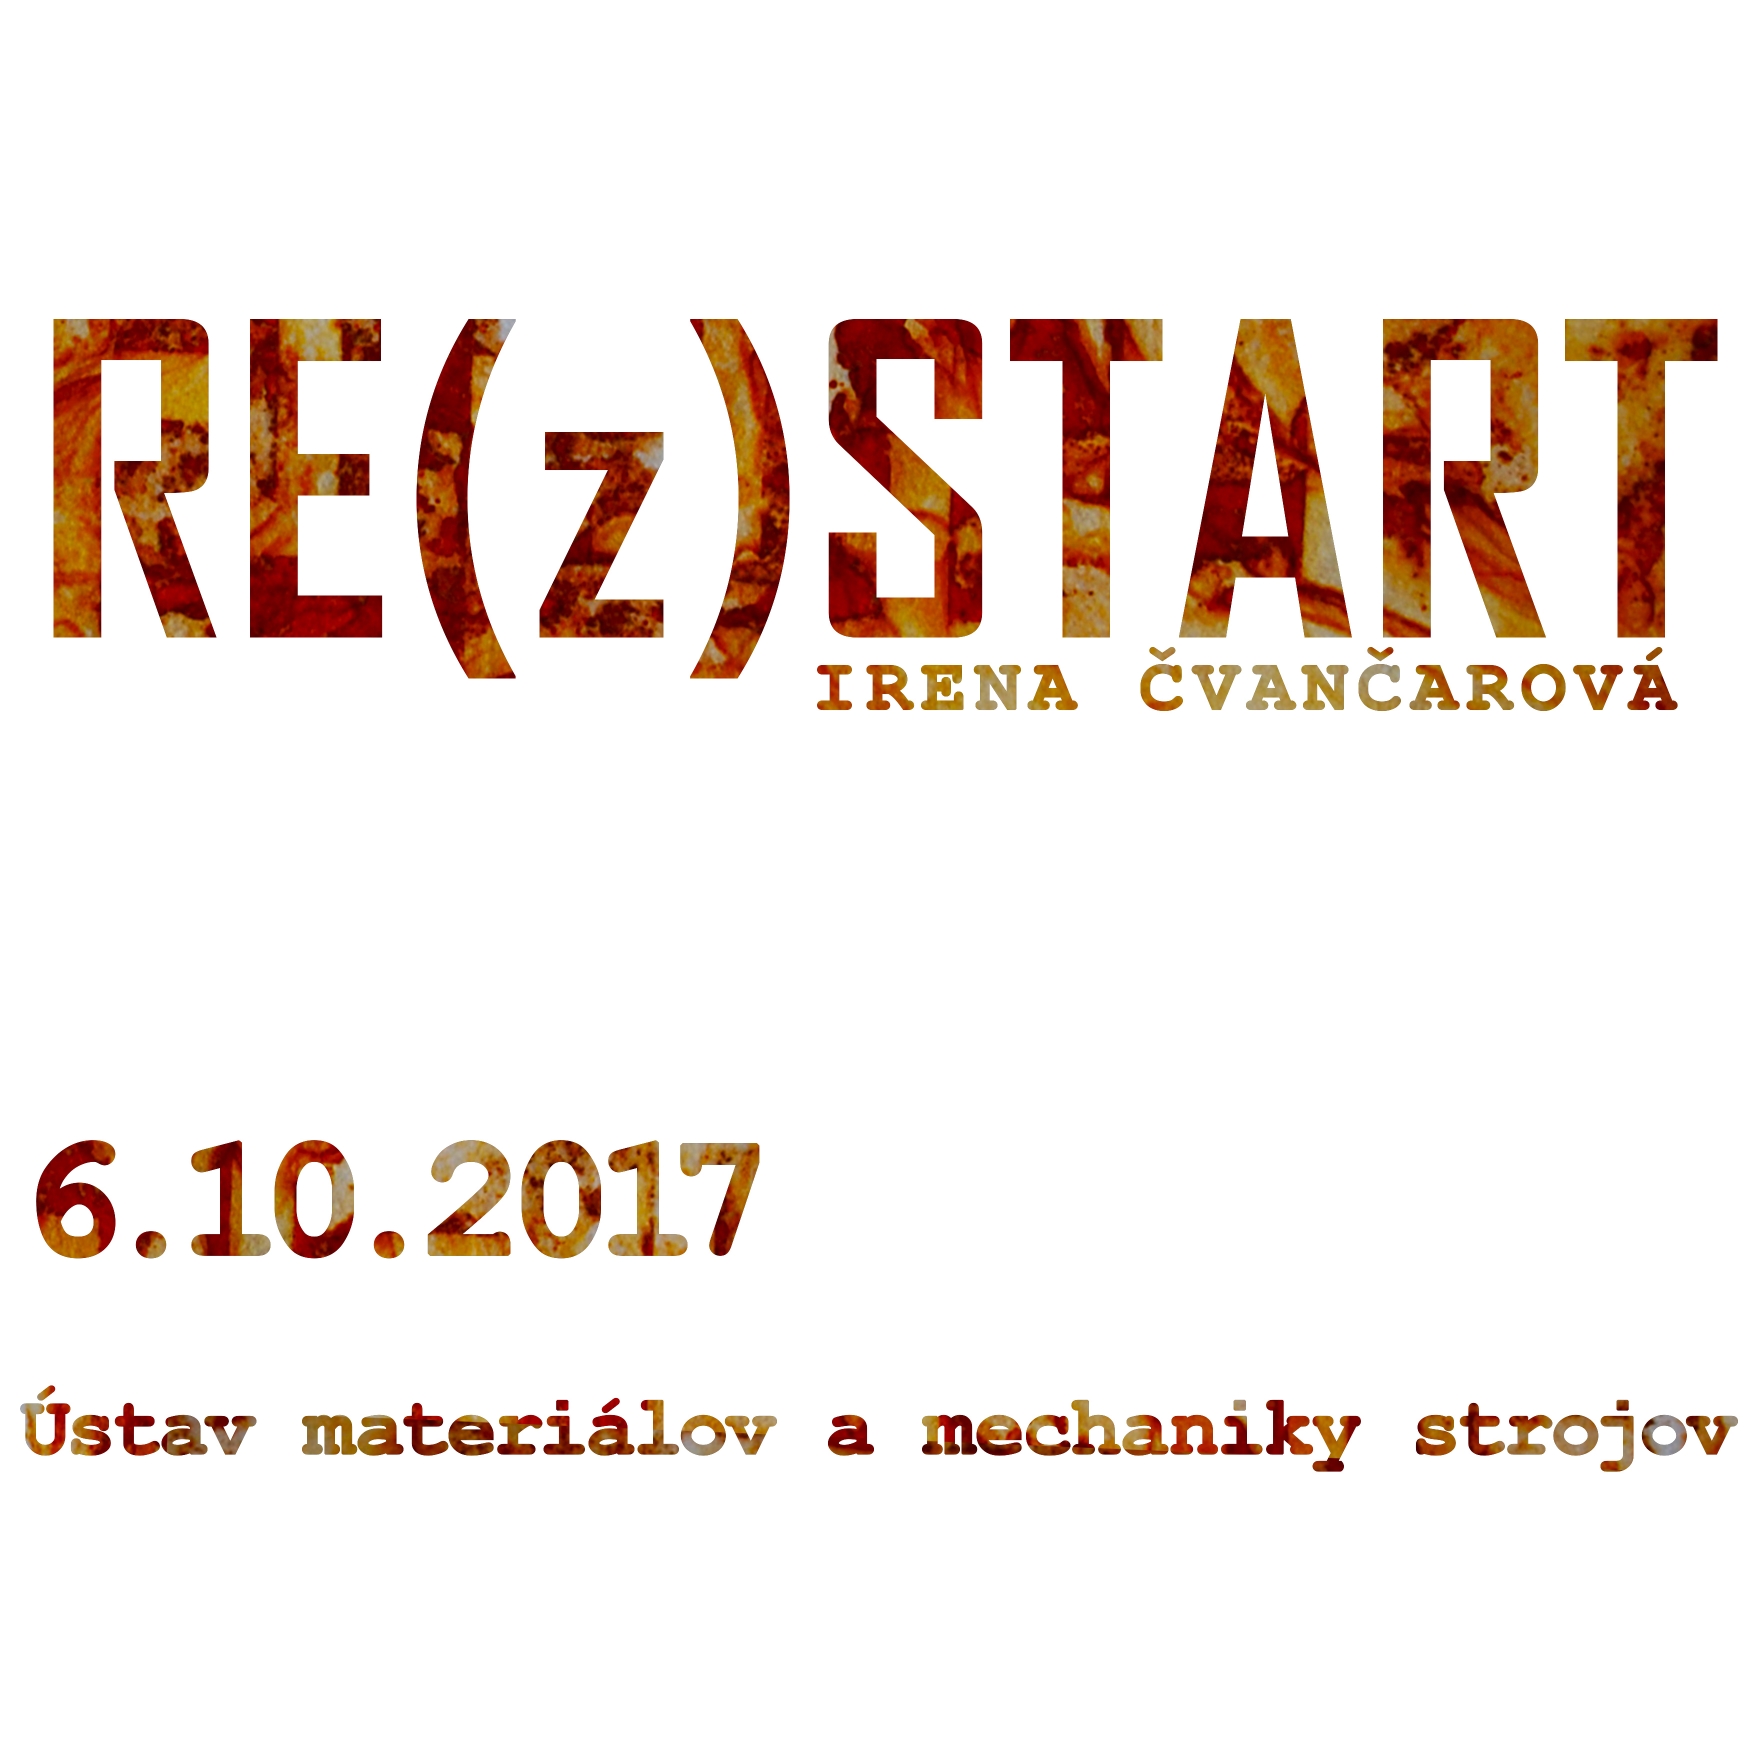 Irena Čvančarová's RE(z)START exhibition